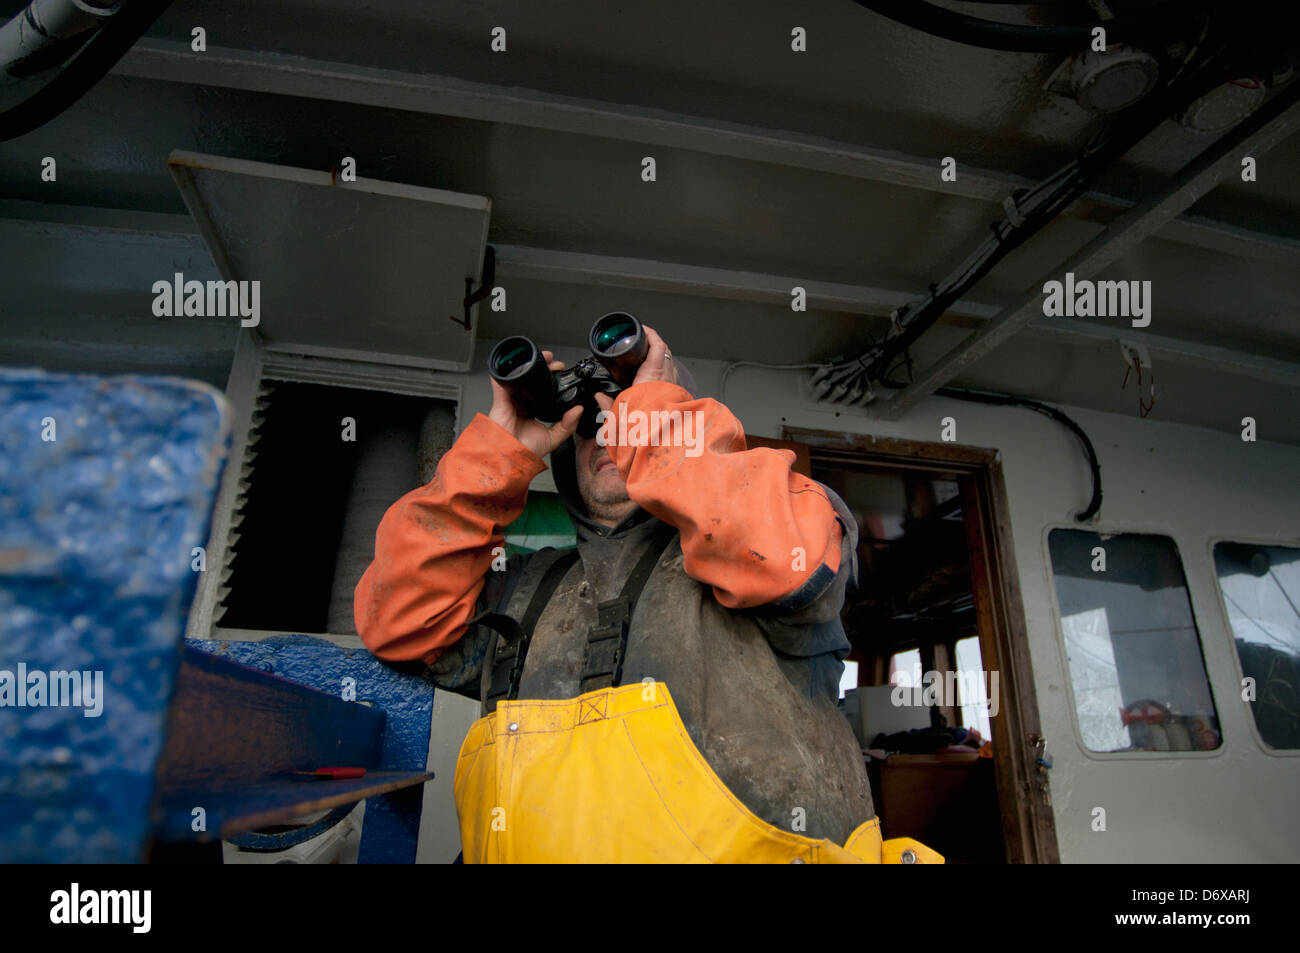 Le capitaine observe d'autres chalutiers de pêche. Banc Stellwagen Banques, New England, United States, North Atlantic Ocean Banque D'Images